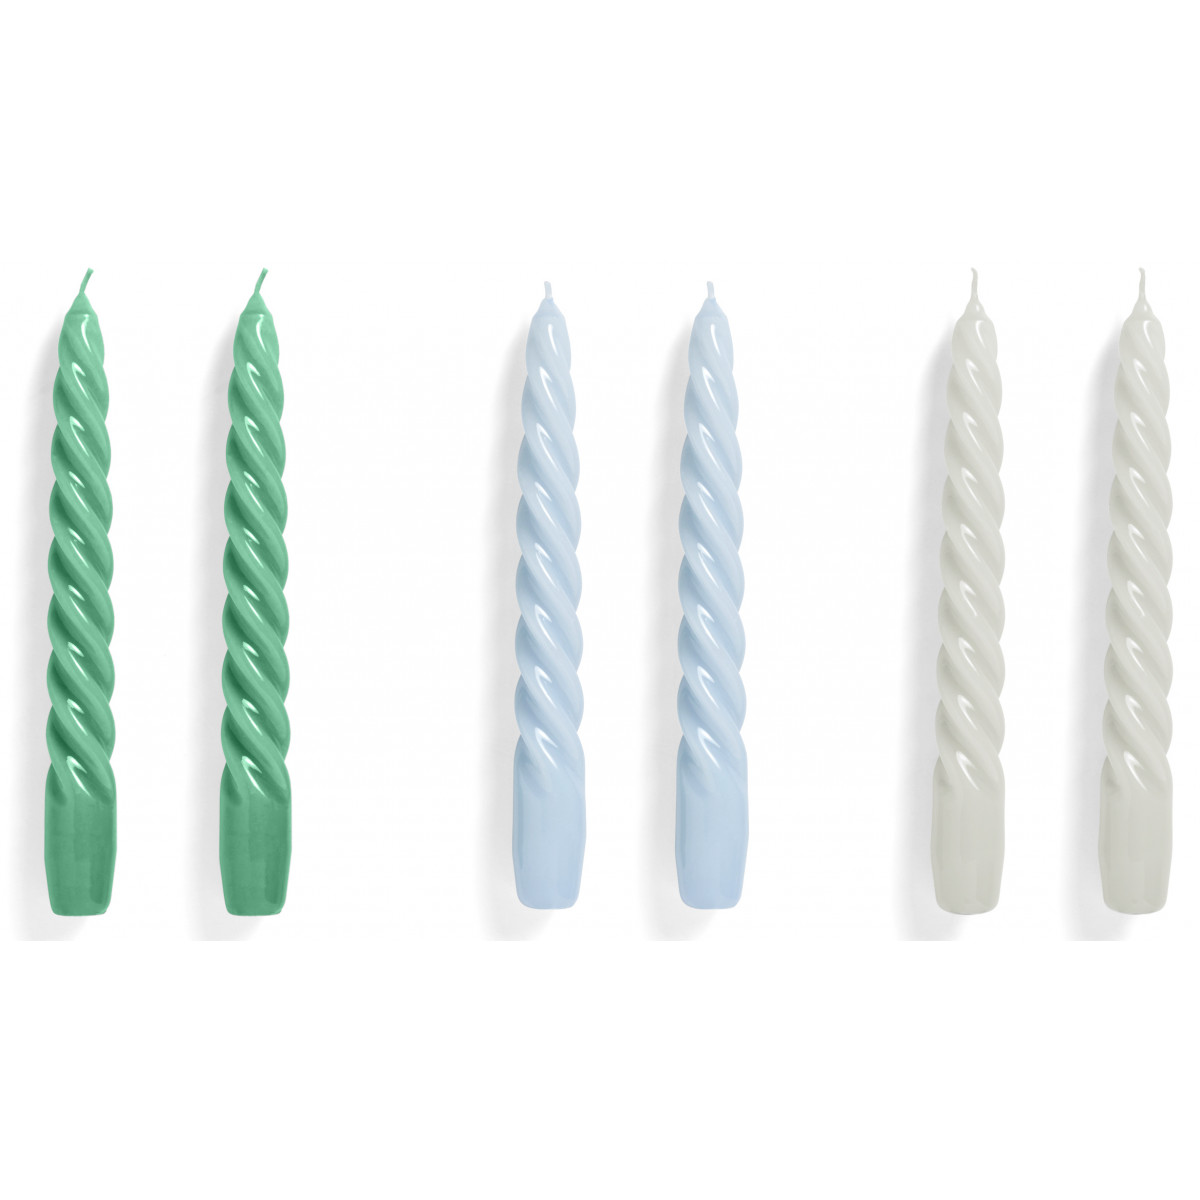 set de 6 bougies Twist - vert clair, bleu clair et gris